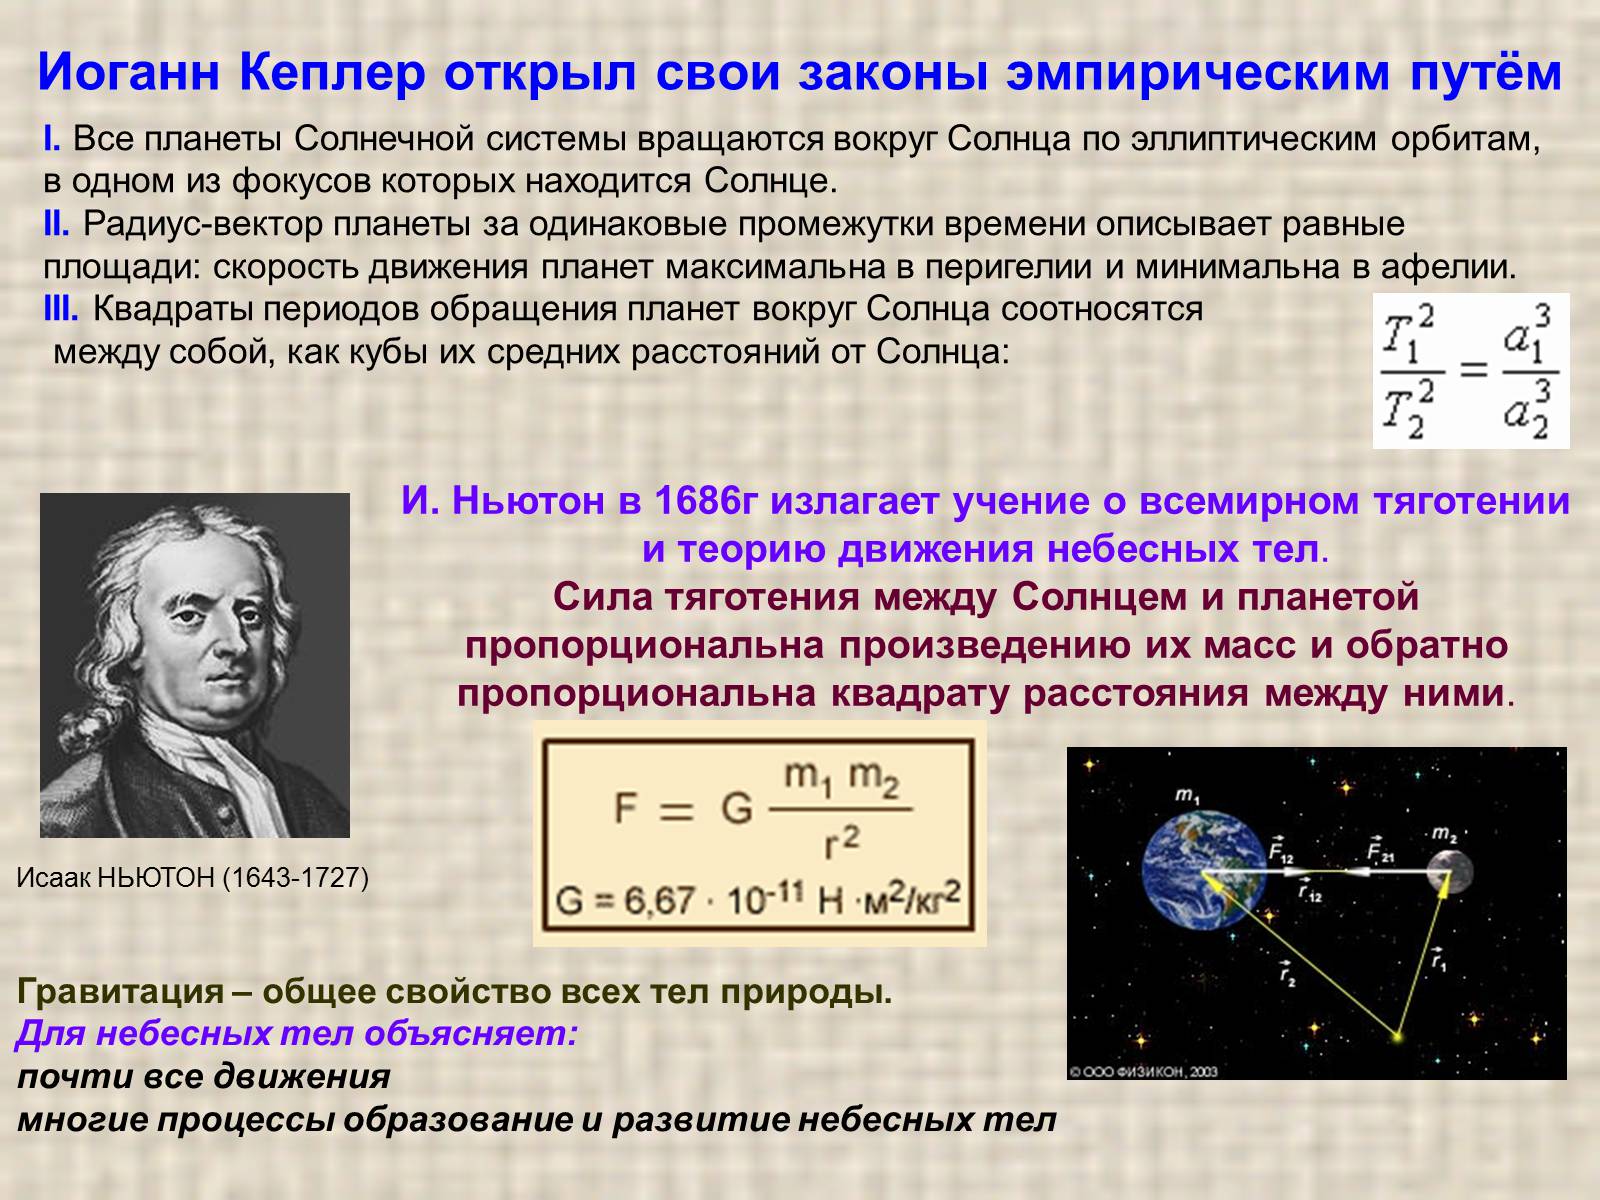 Сила притяжения на орбите. Обобщение и уточнение Ньютоном законов Кеплера. Законы Кеплера в формулировке Ньютона. Иоганн Кеплер законы движения планет. Первый закон Кеплера уточненный Ньютоном.